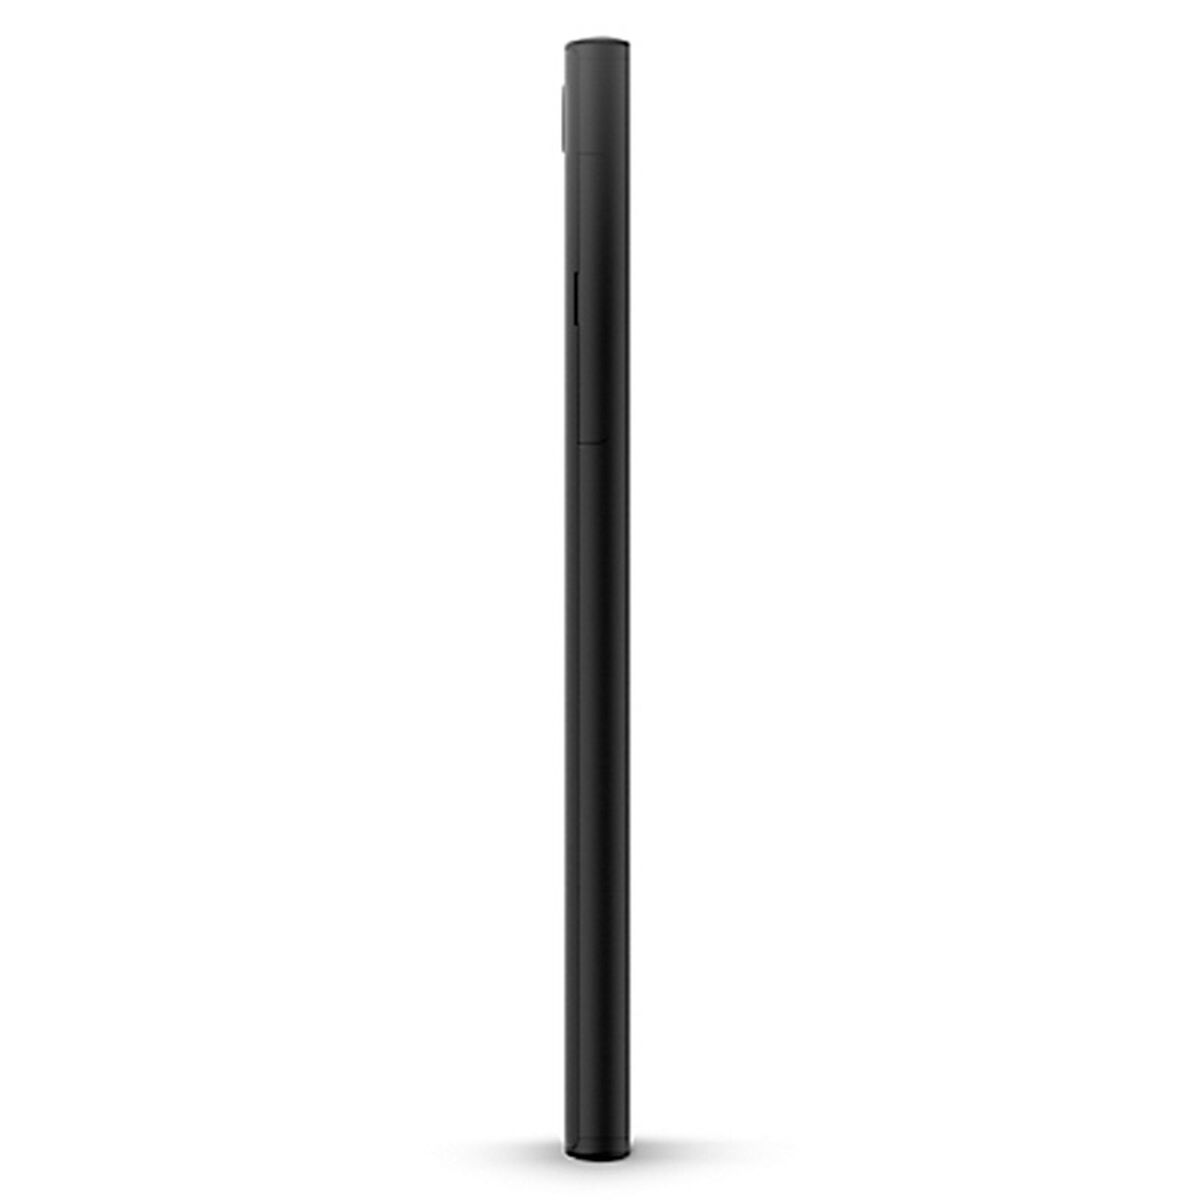 Celular Sony Xperia L1 5.5" Negro Entel